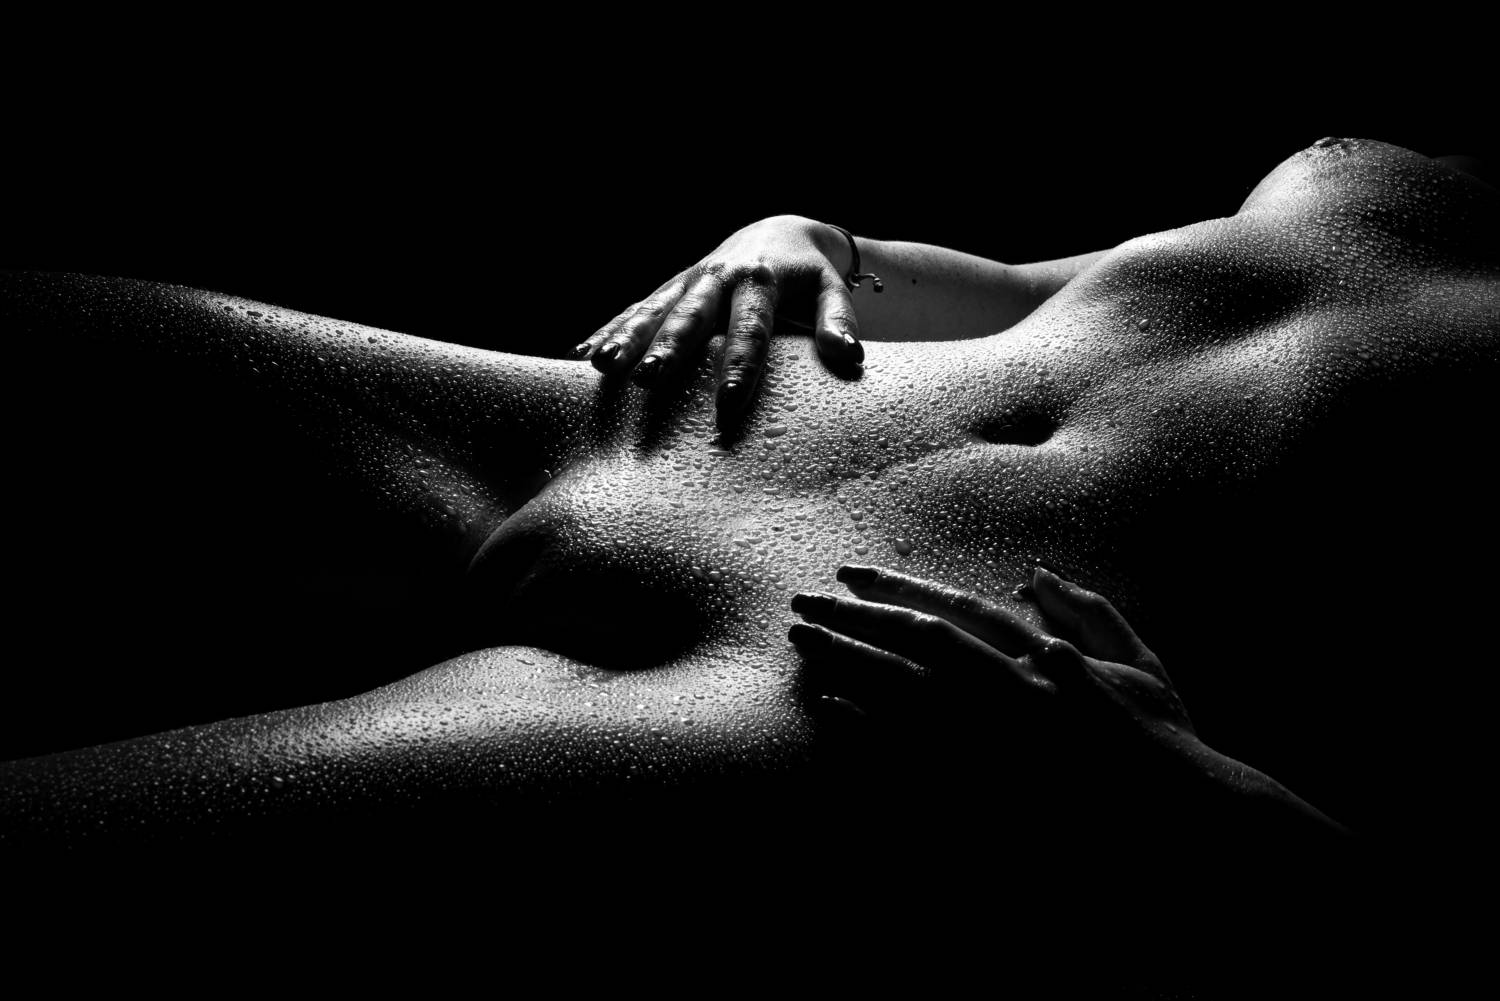 Erotic black & white photos